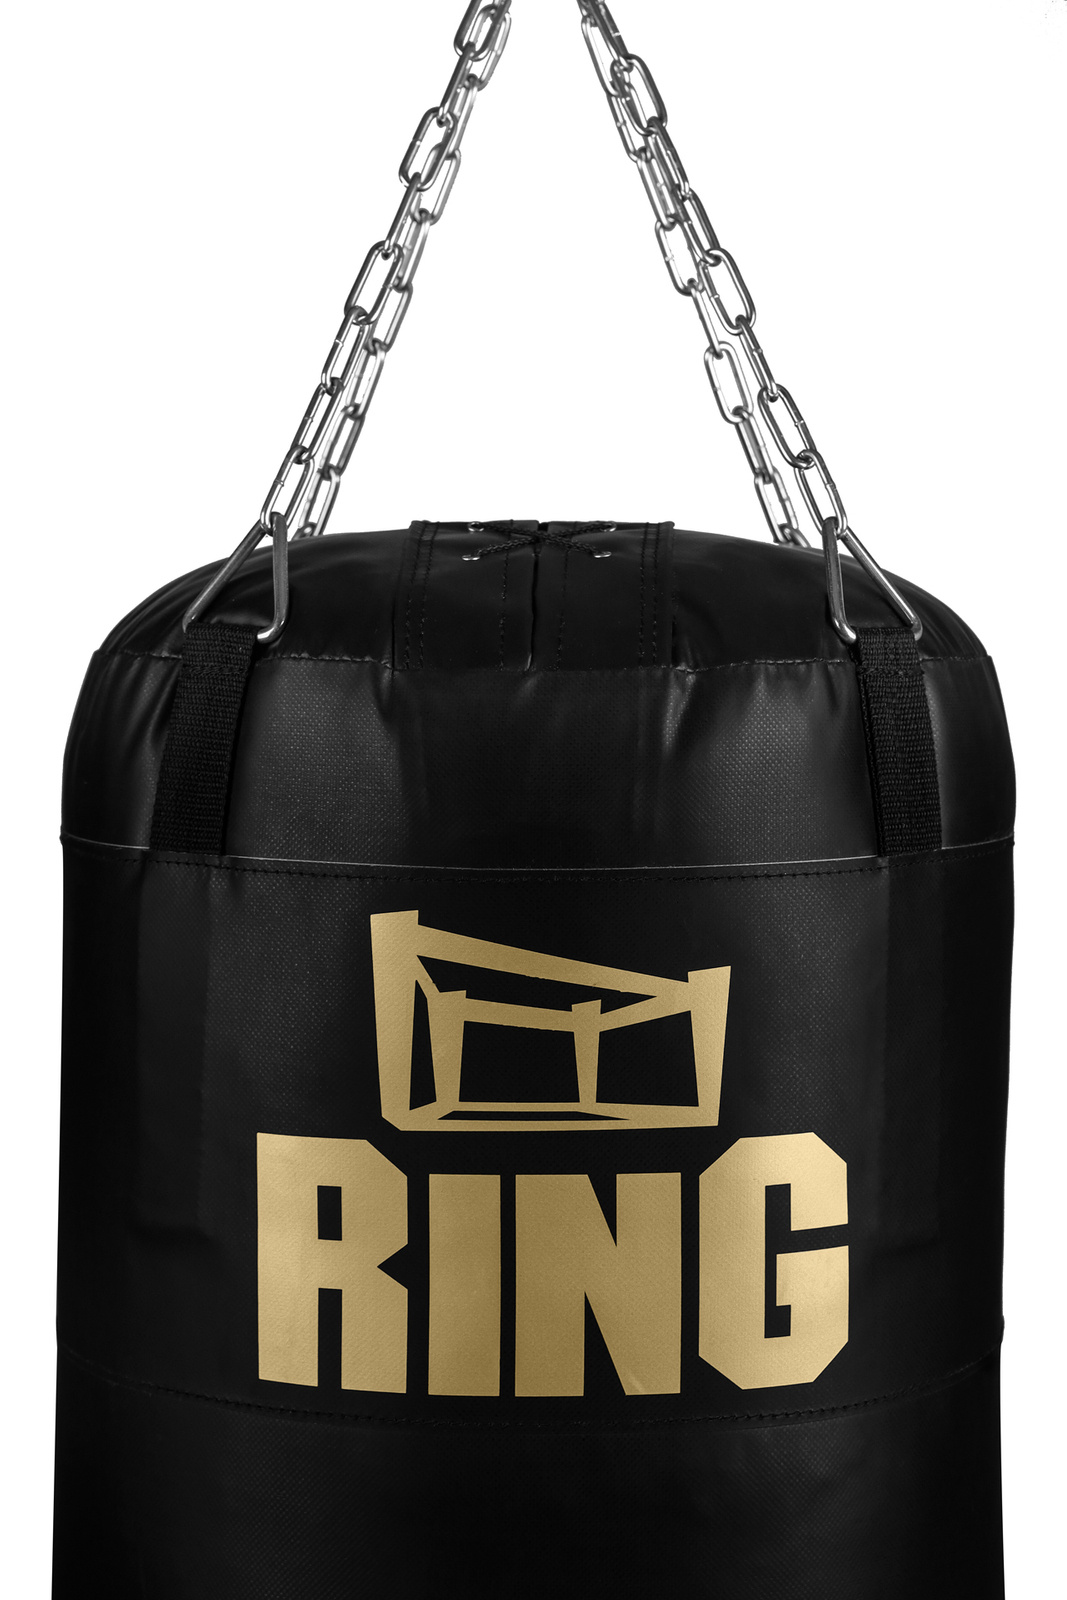 Boxerské vrece Exclusive Gold 140/40 cm vyplnené 40 Kg Ring Sport